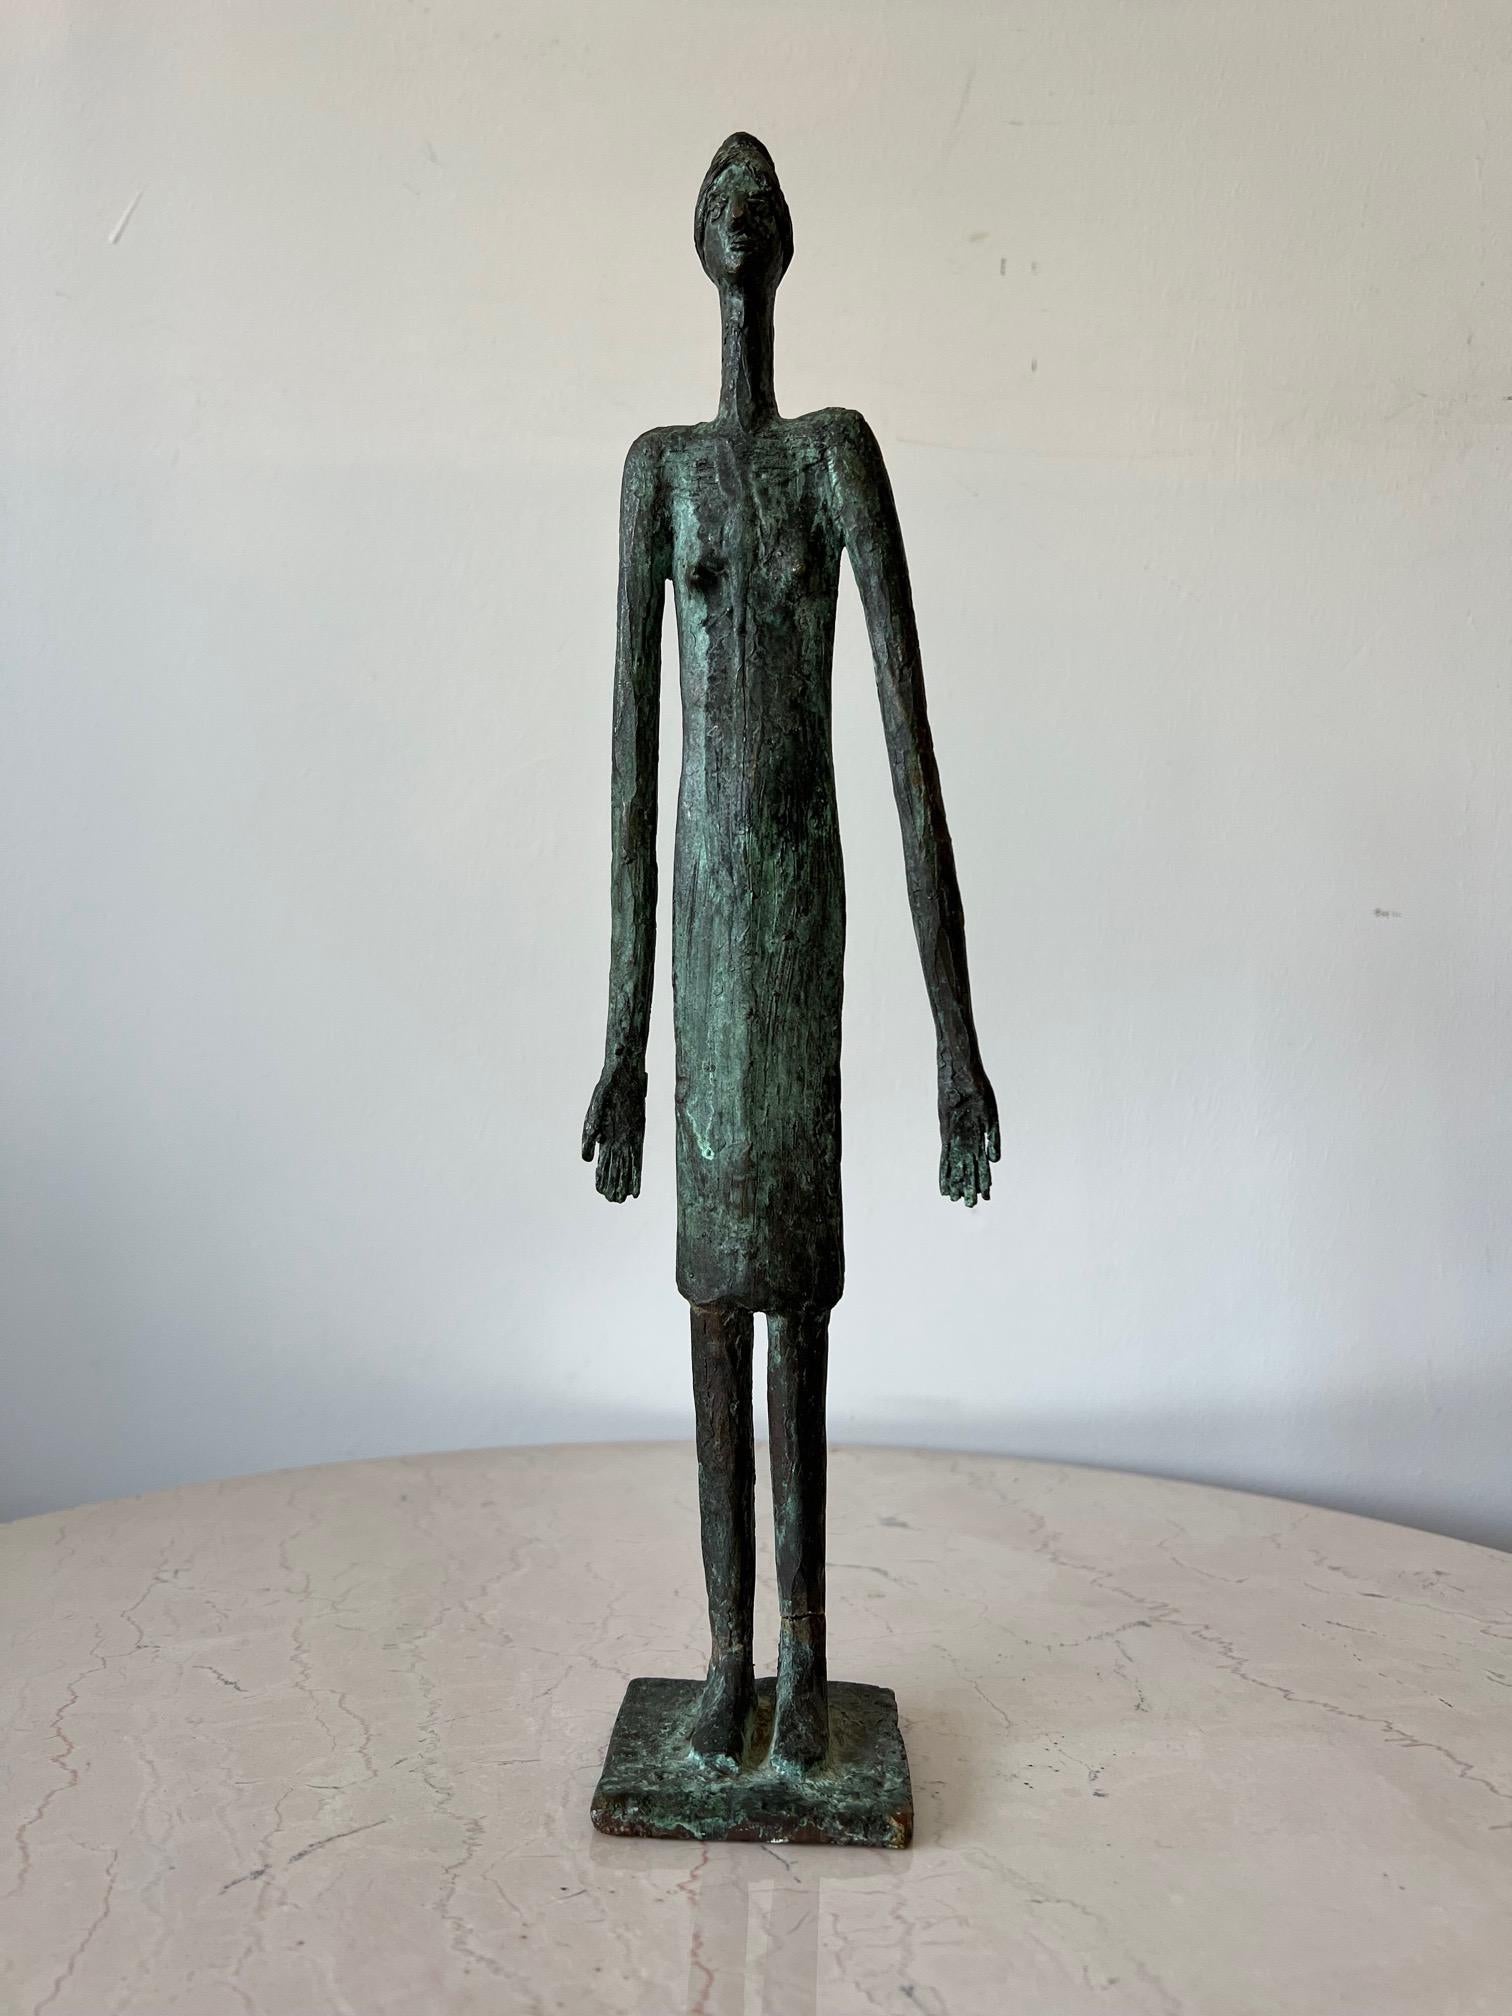 Une sculpture inhabituelle en bronze coulé d'Anne Van Kleeck. Figure allongée - exagérée et inspirée de Giacometti. Provenant de la succession de l'artiste.  Une note sur l'artiste :  Anne Van Kleeck était principalement connue pour ses travaux en